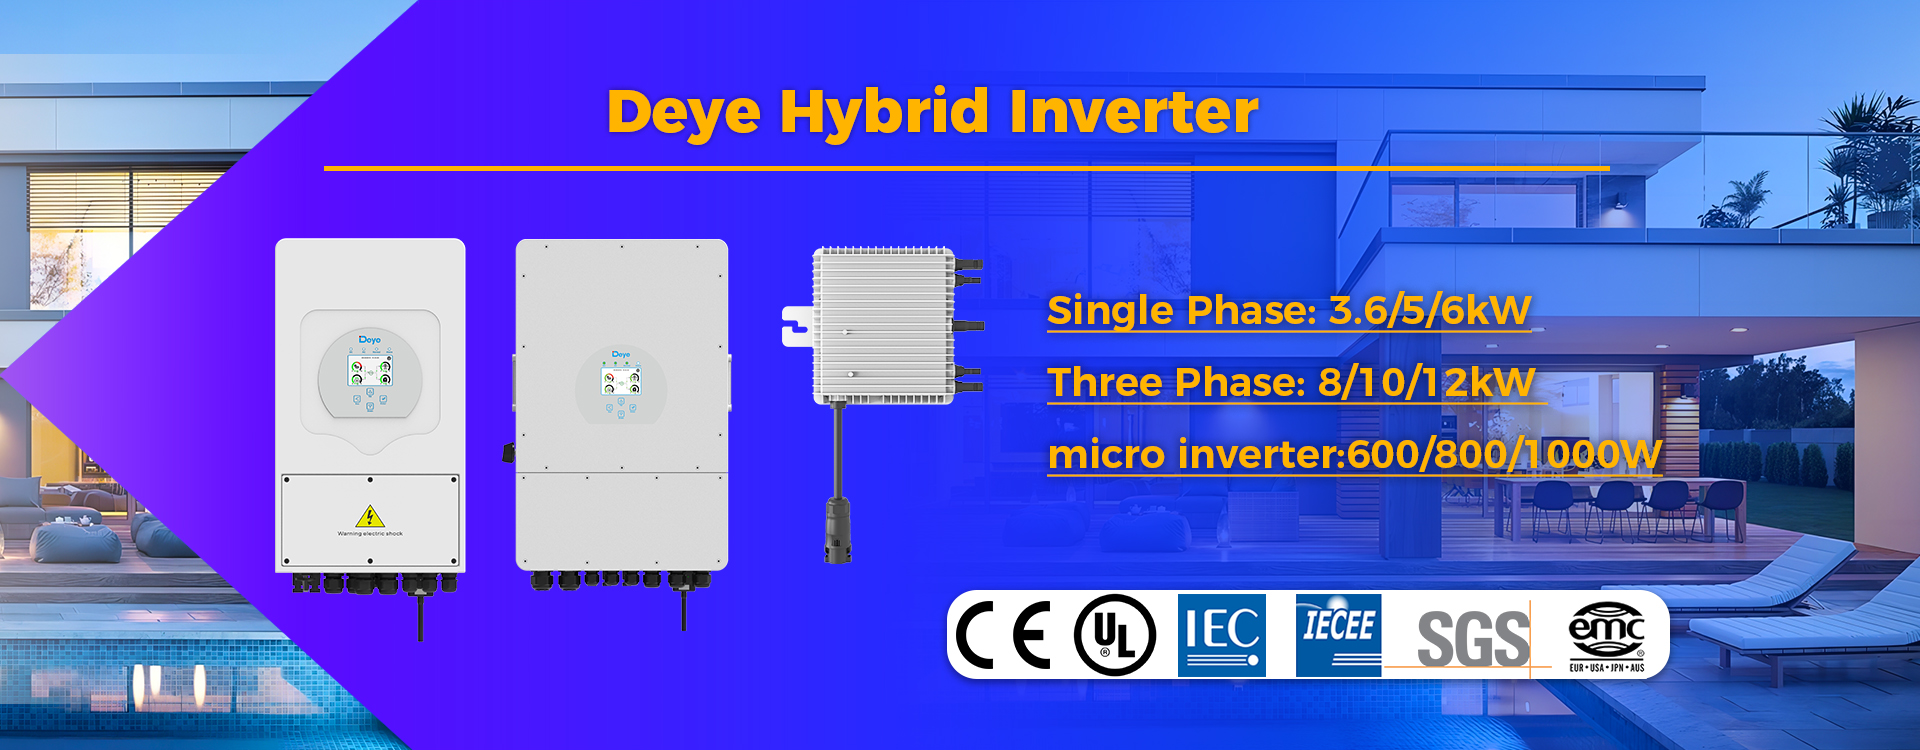 dey hybrid inverter microinverter